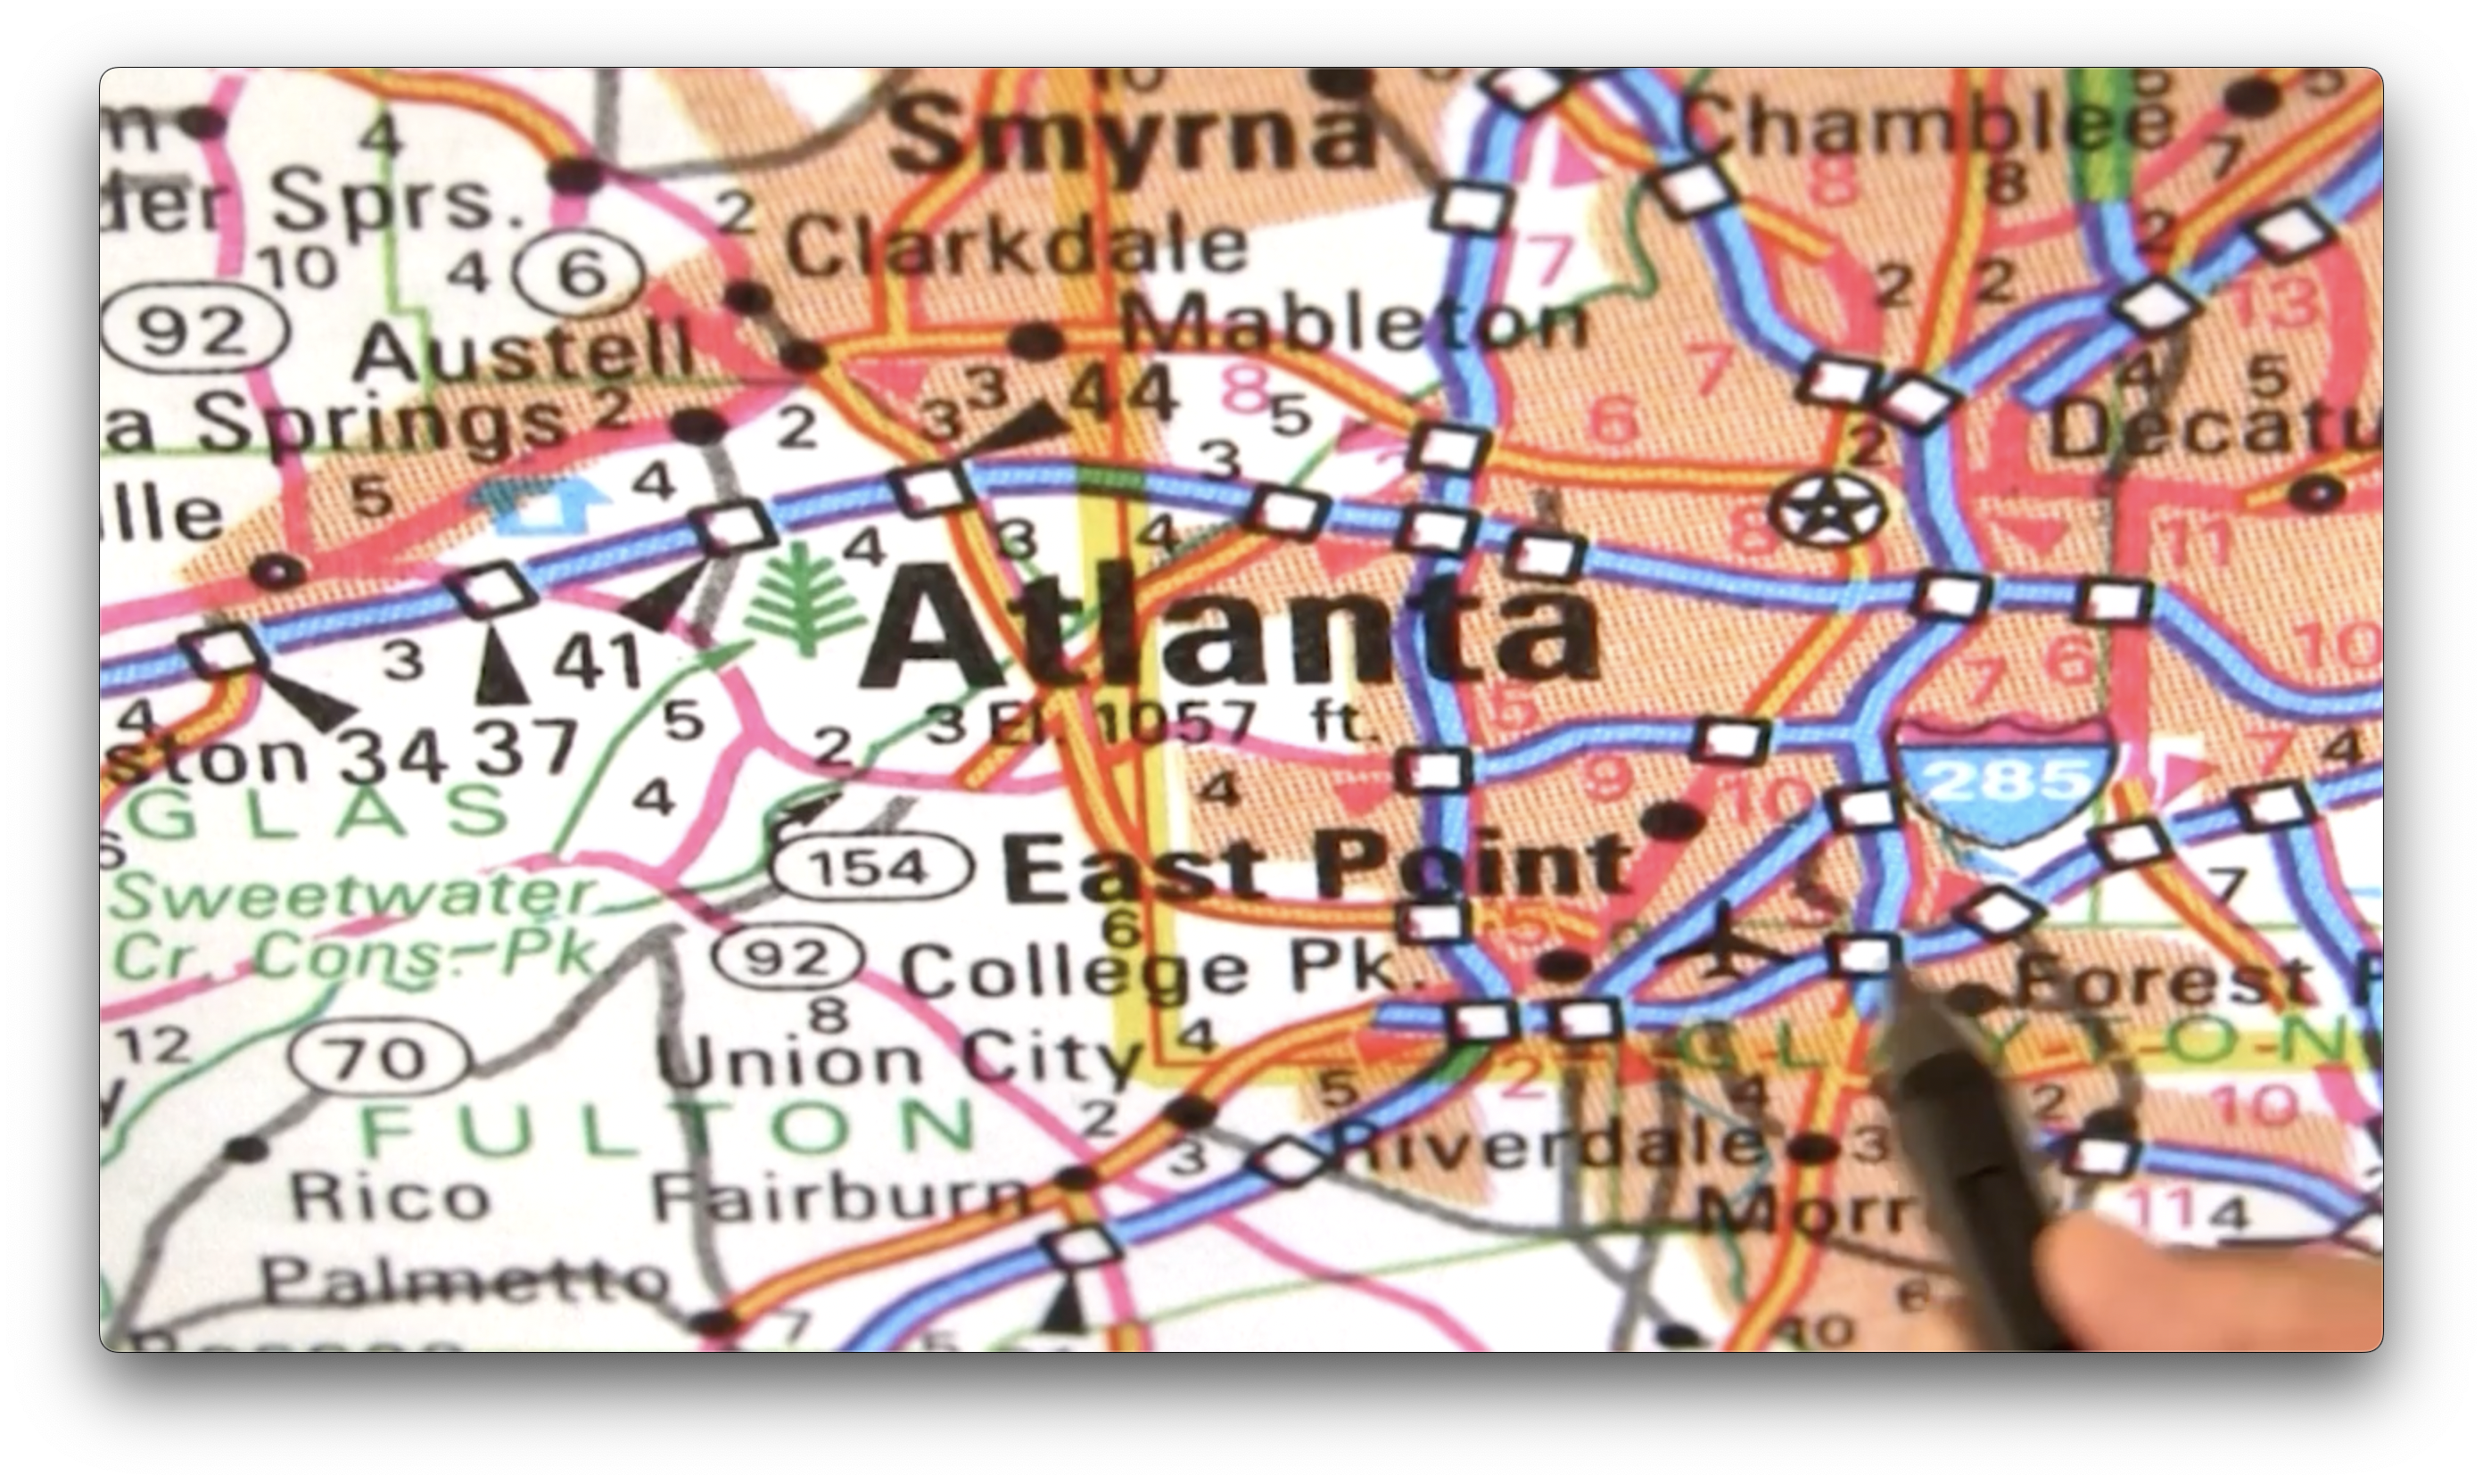 A closeup view of the roads around Atlanta.